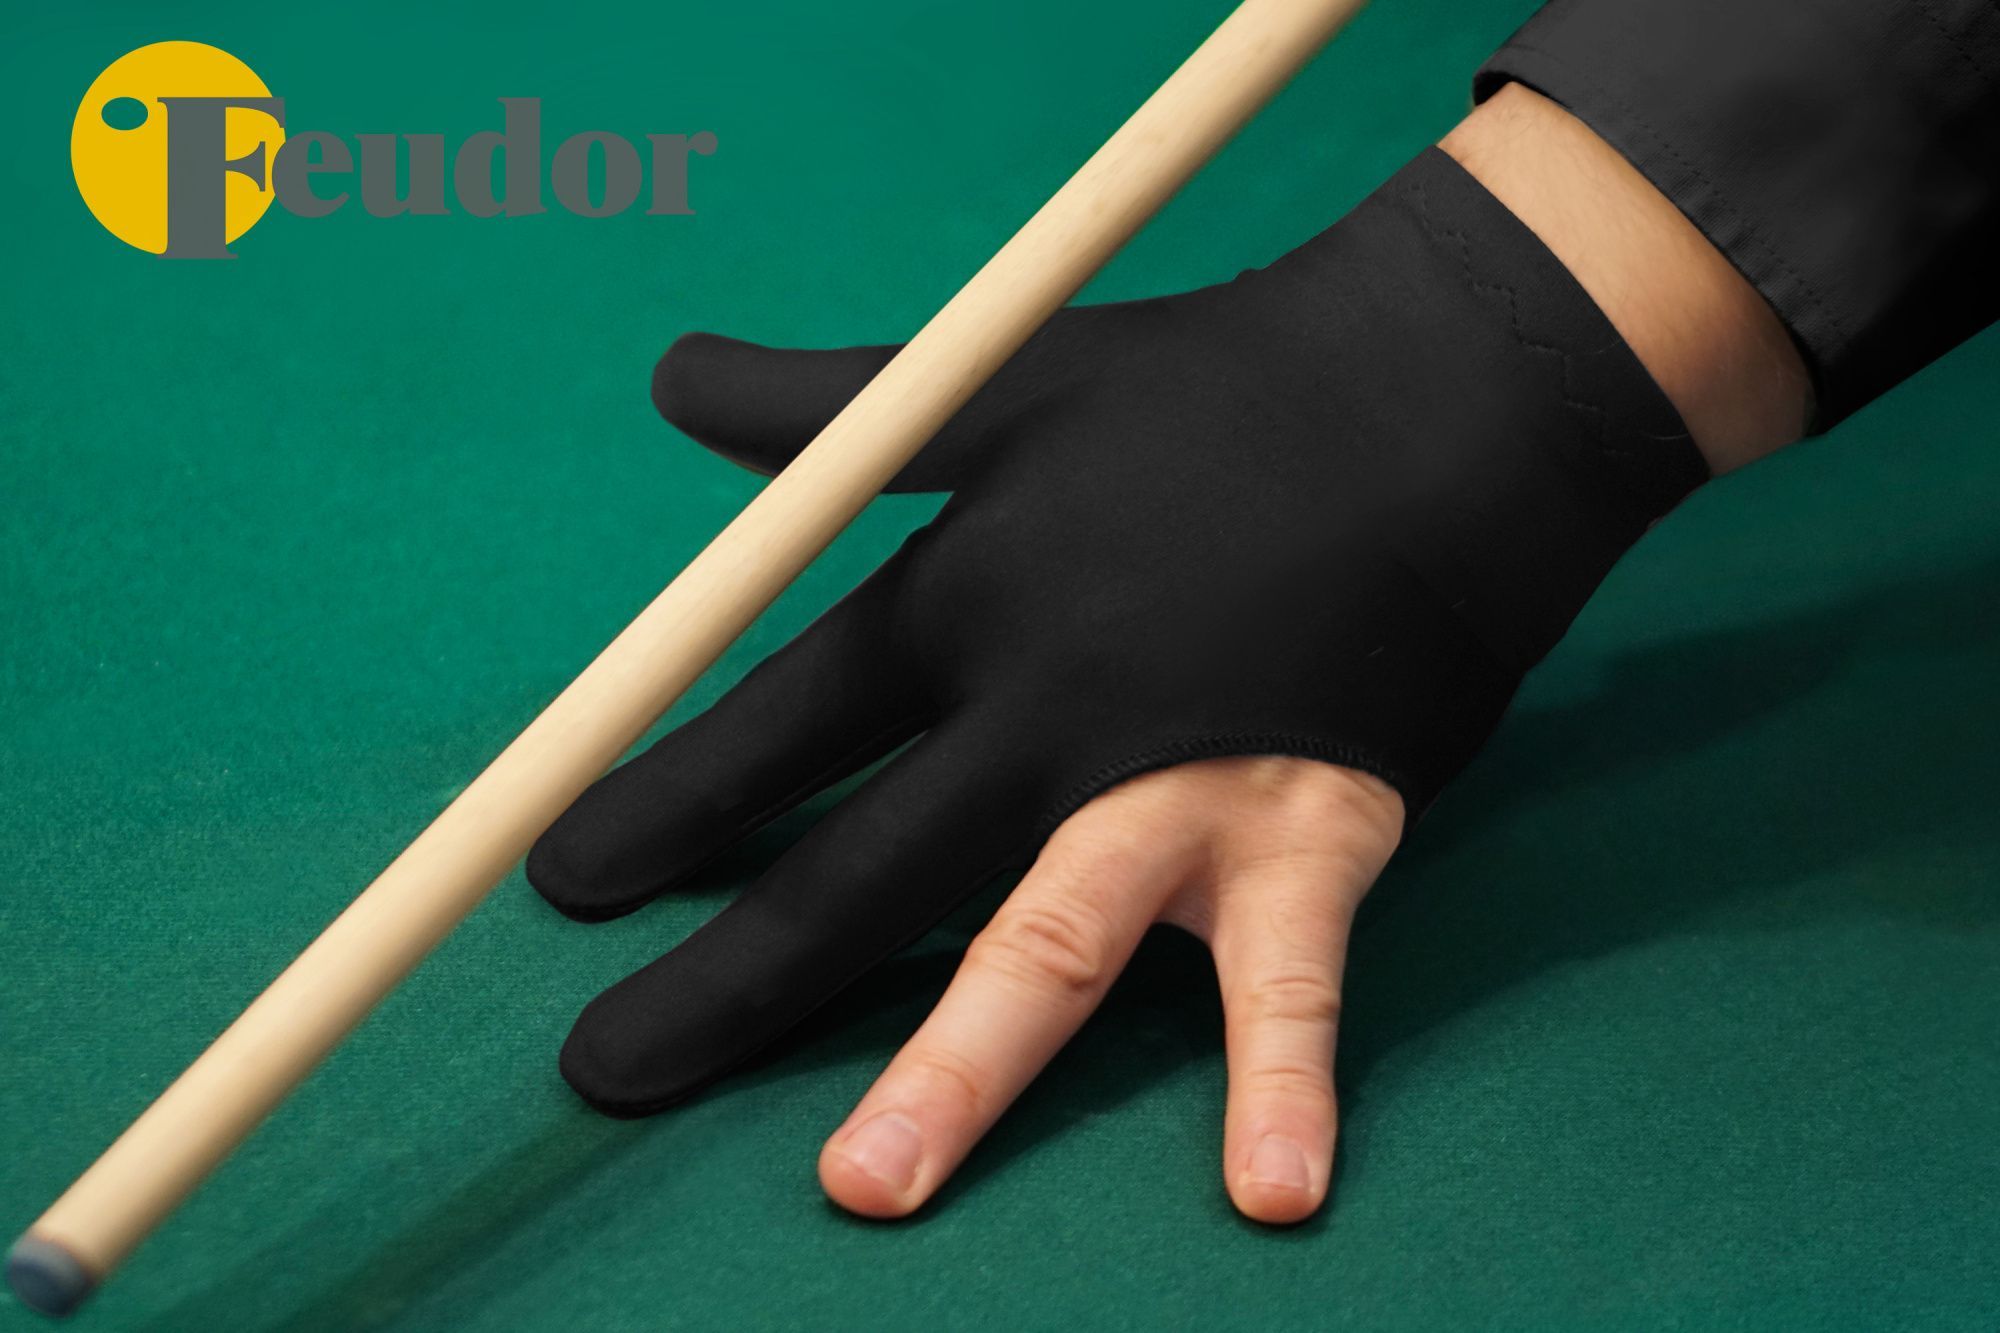 Перчатка-бильярдная Feudor Standard black S